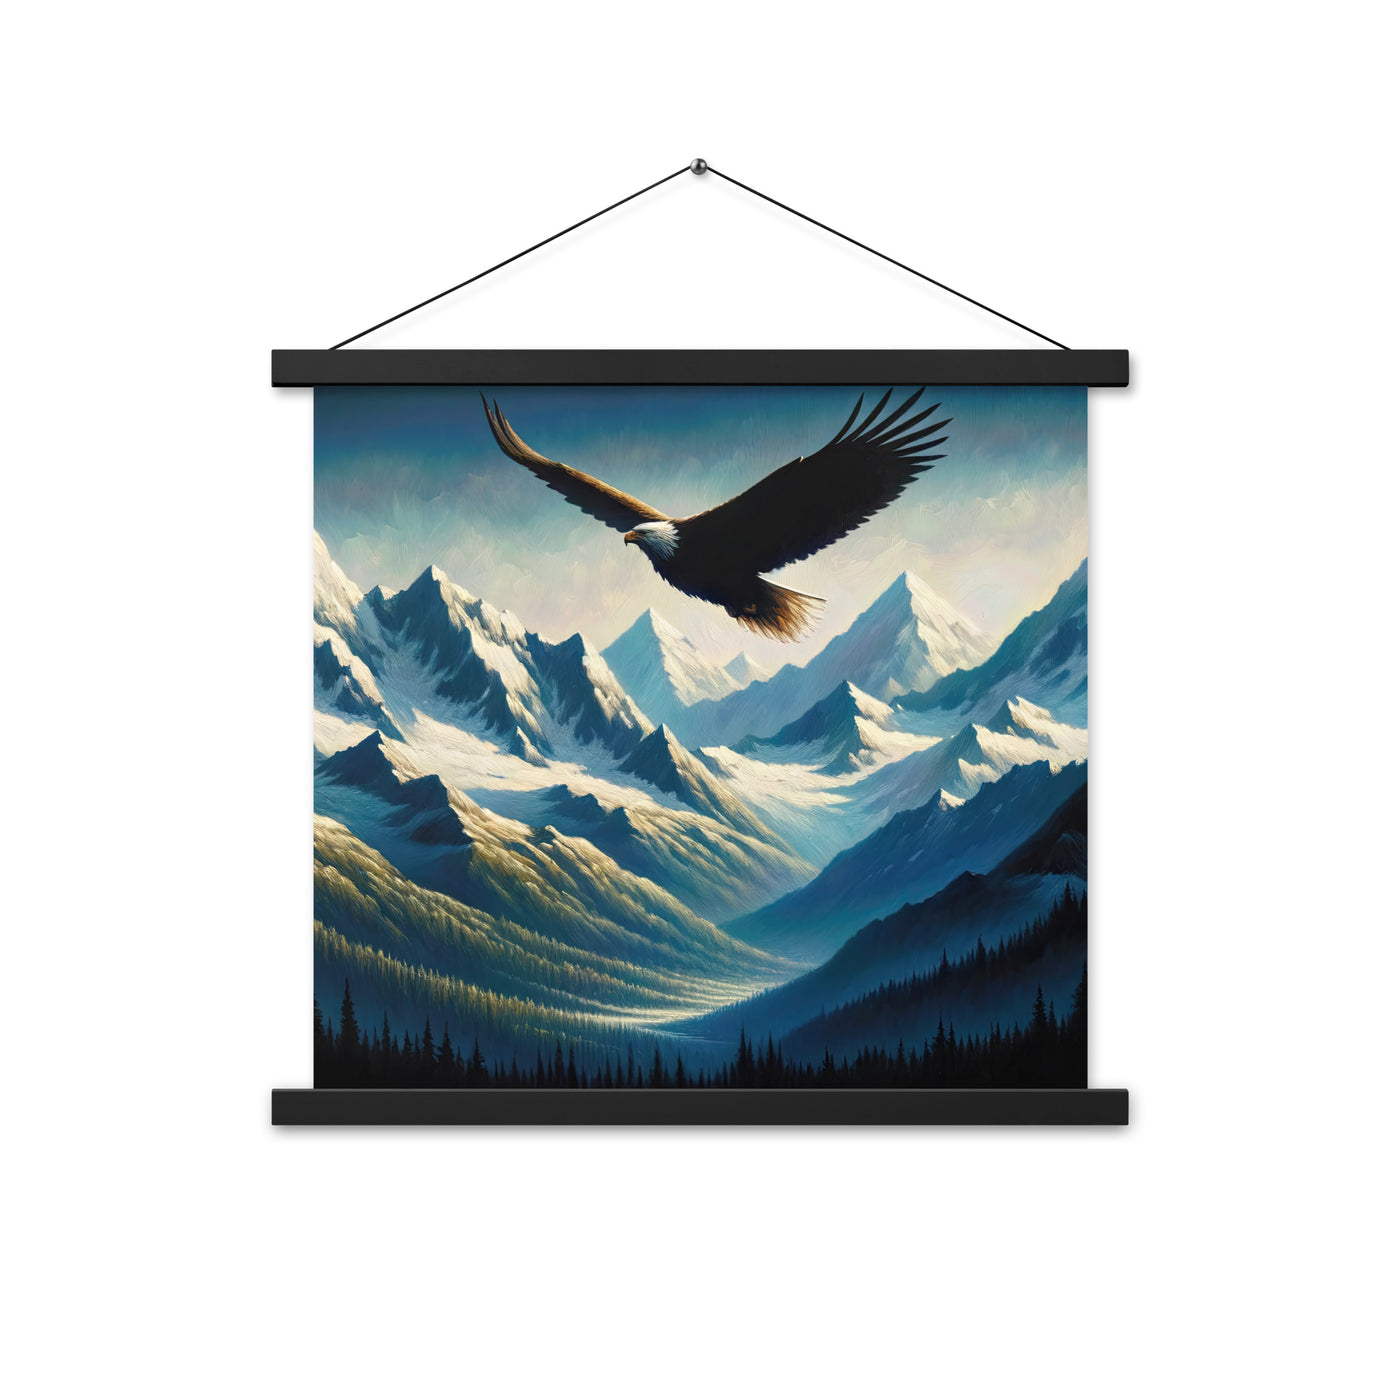 Ölgemälde eines Adlers vor schneebedeckten Bergsilhouetten - Premium Poster mit Aufhängung berge xxx yyy zzz 45.7 x 45.7 cm